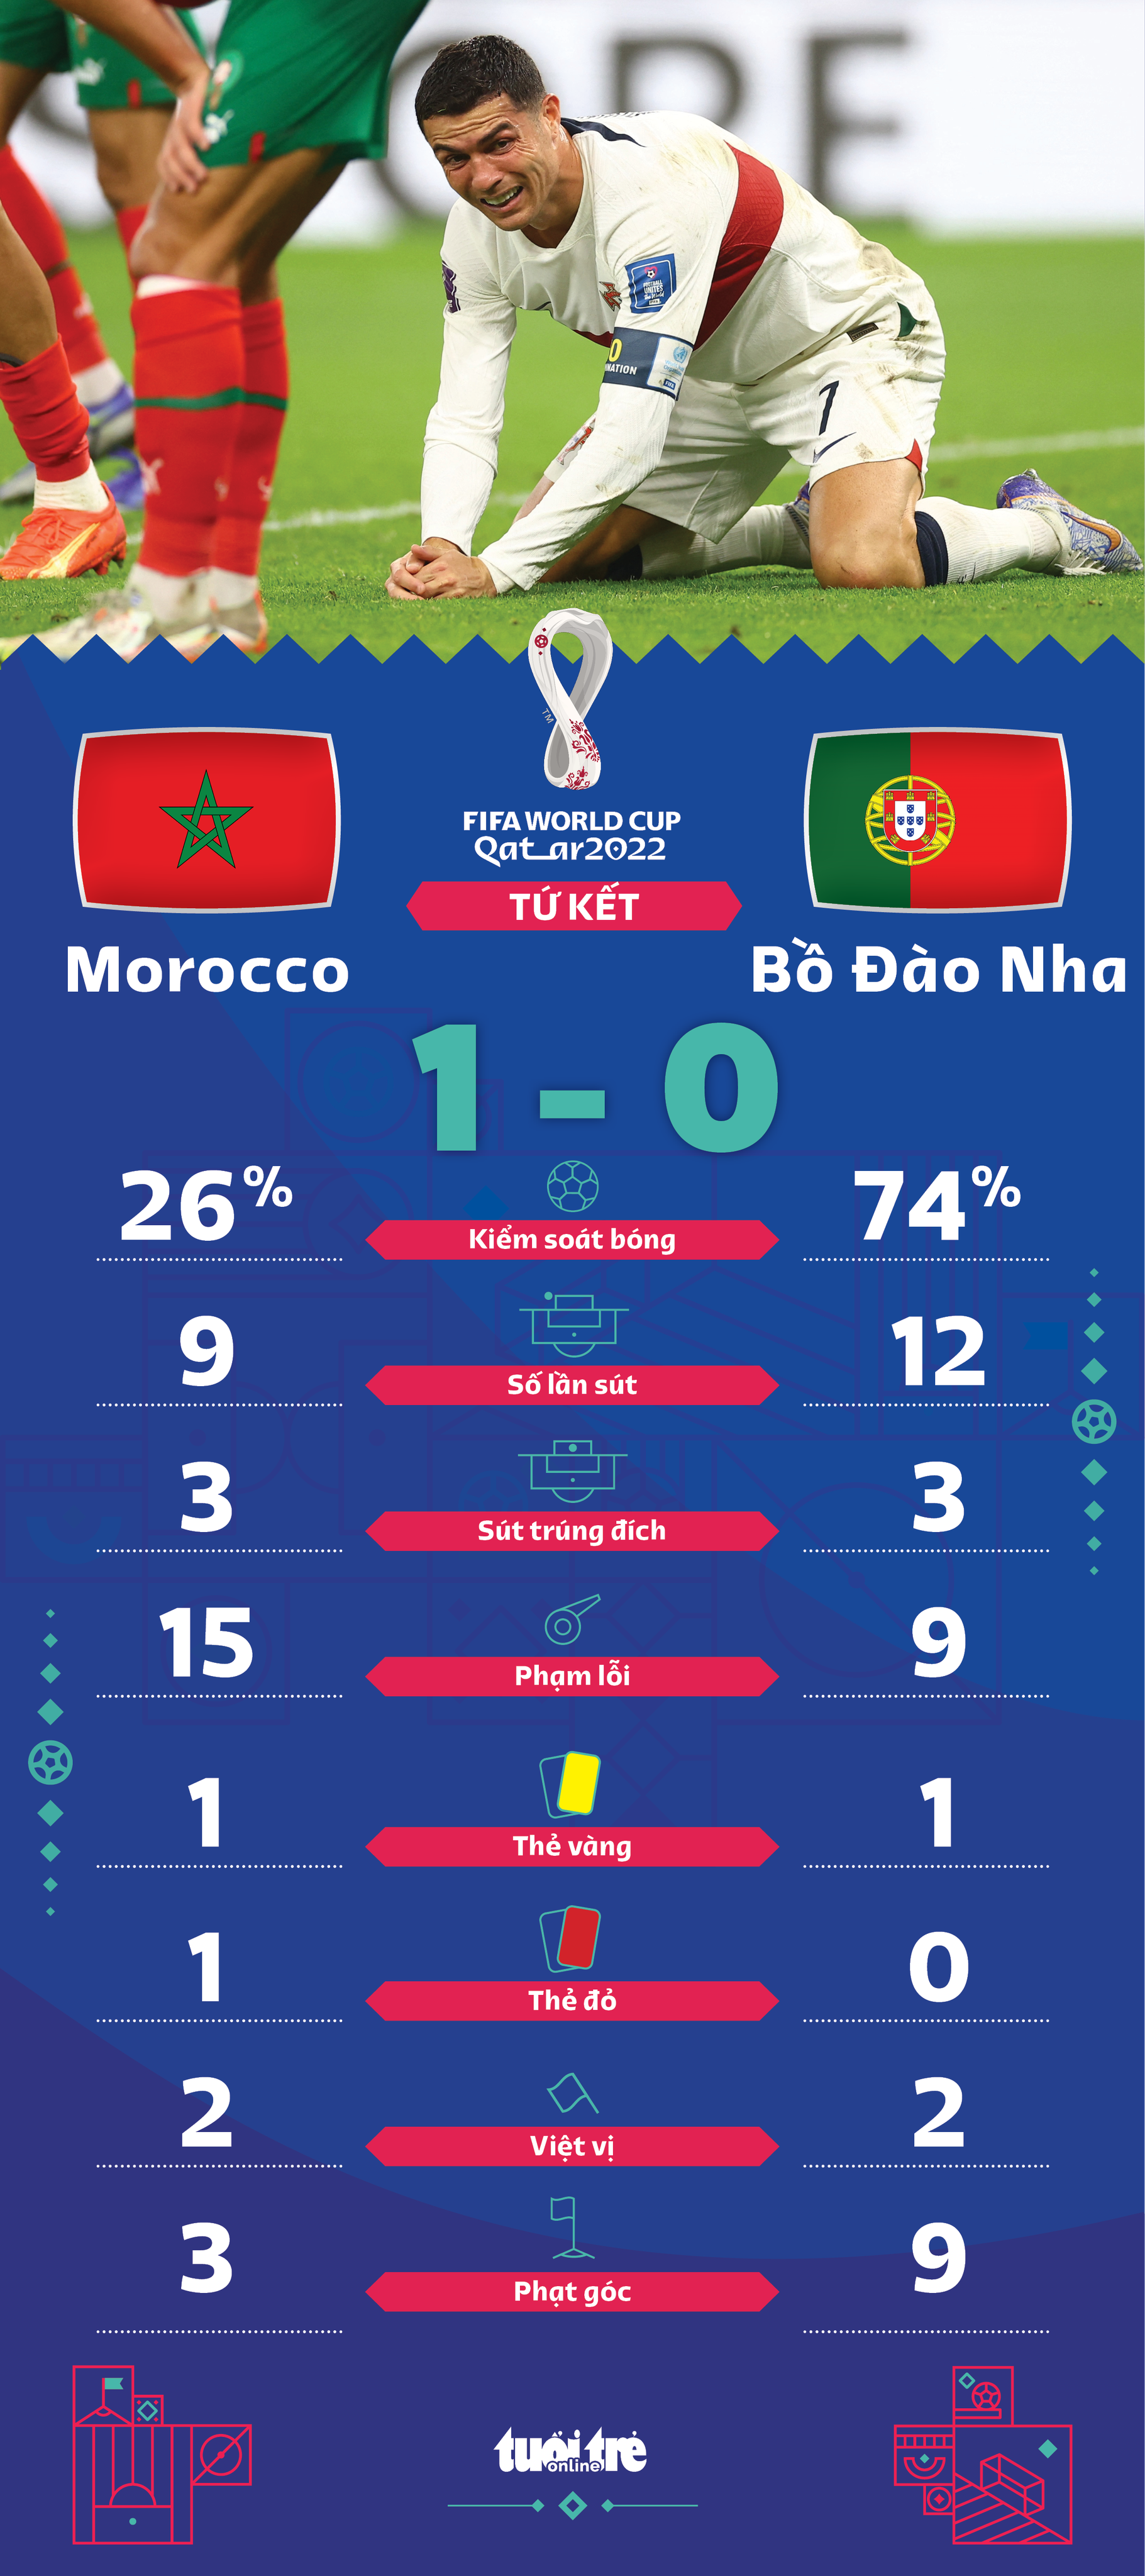 Thắng Bồ Đào Nha, Morocco là đội châu Phi đầu tiên vào bán kết World Cup - Ảnh 2.